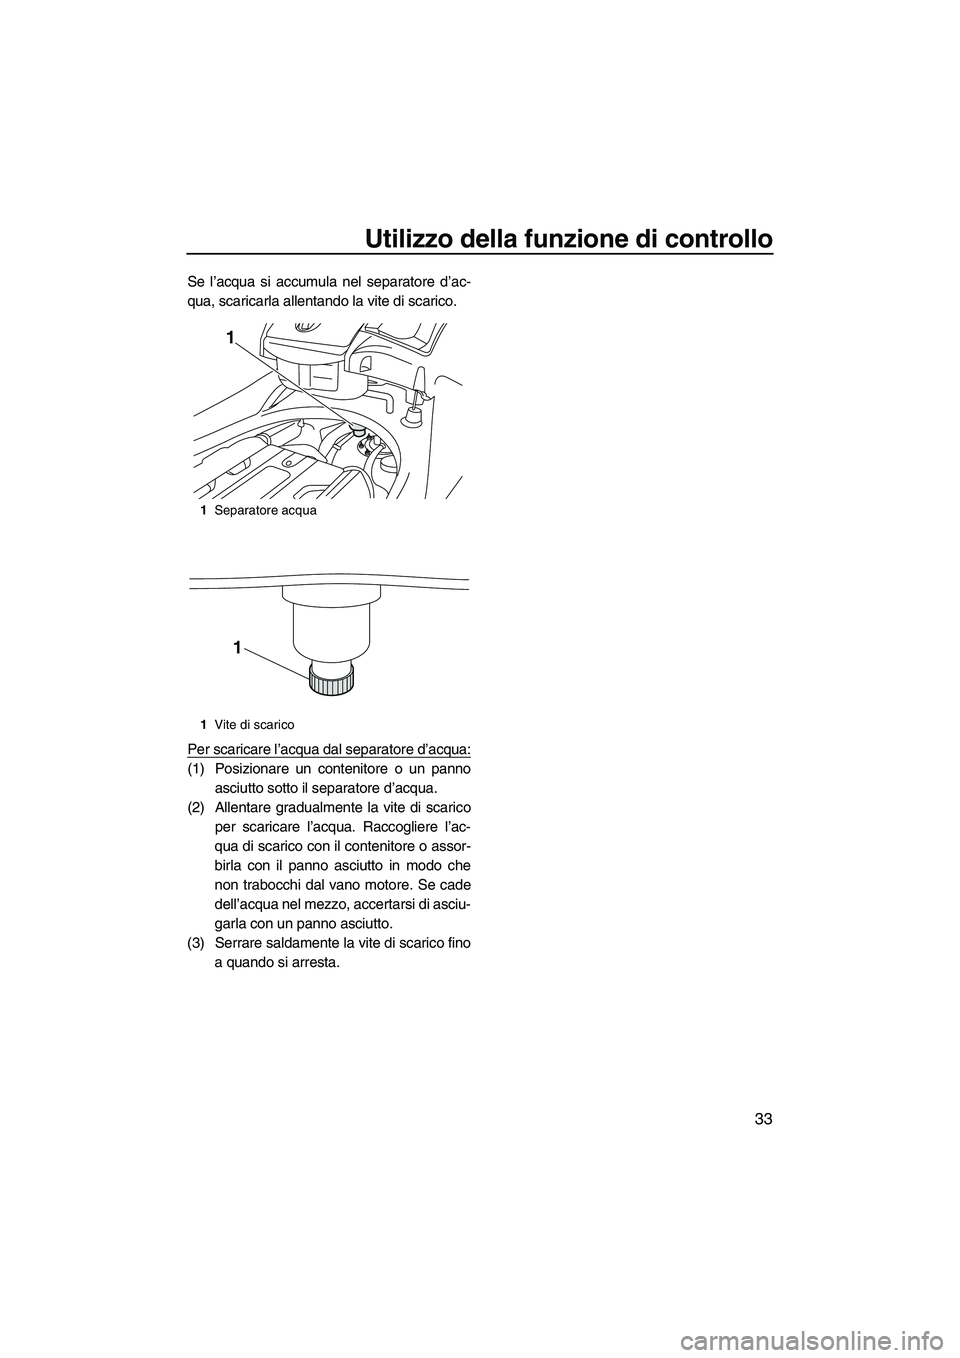 YAMAHA FX SHO 2010  Manuale duso (in Italian) Utilizzo della funzione di controllo
33
Se l’acqua si accumula nel separatore d’ac-
qua, scaricarla allentando la vite di scarico.
Per scaricare l’acqua dal separatore d’acqua:
(1) Posizionare